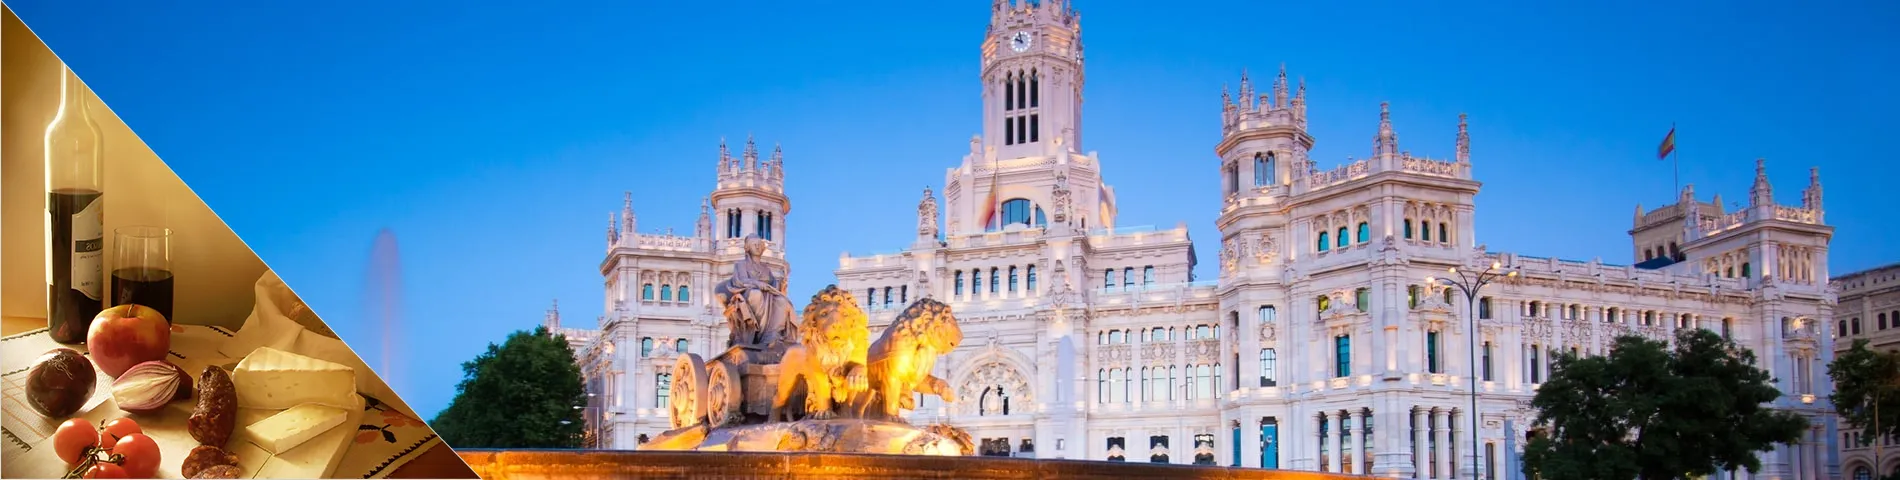 مدريد - (دورة الثقافة مجتمعة)